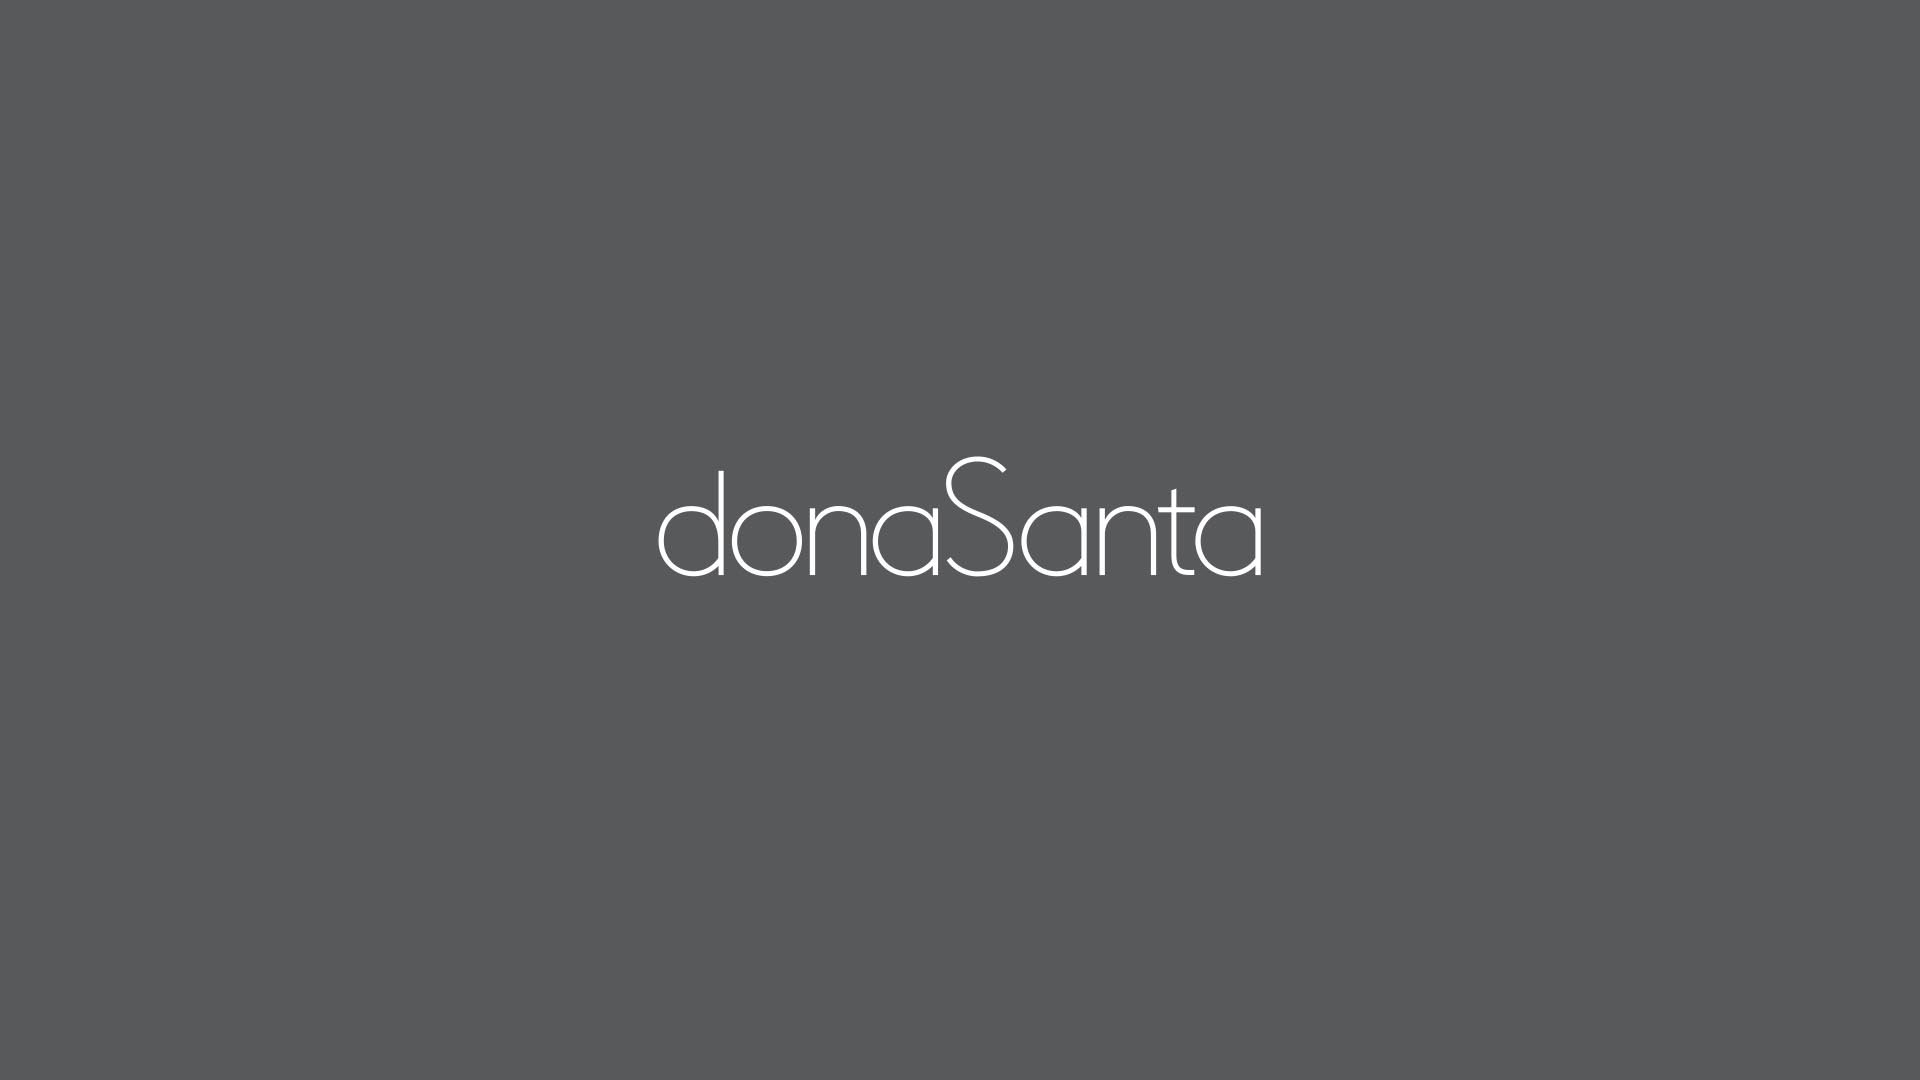 estudio-mola-dona-santa-001-logotipo.jpg